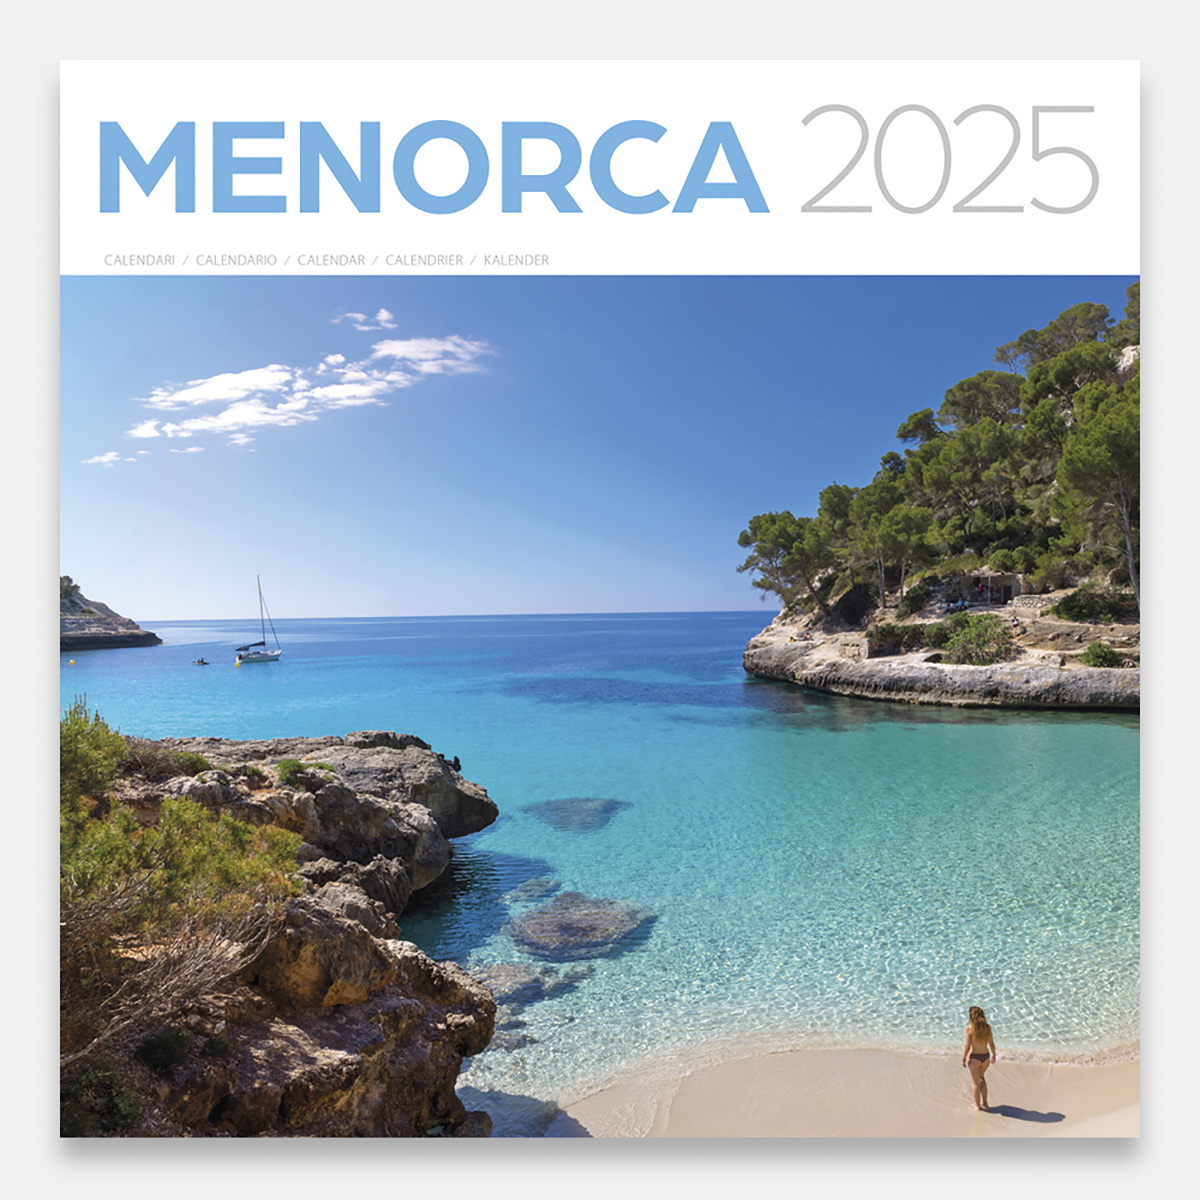 Calendario 2025 Menorca 25meg calendario pared 2025 menorca